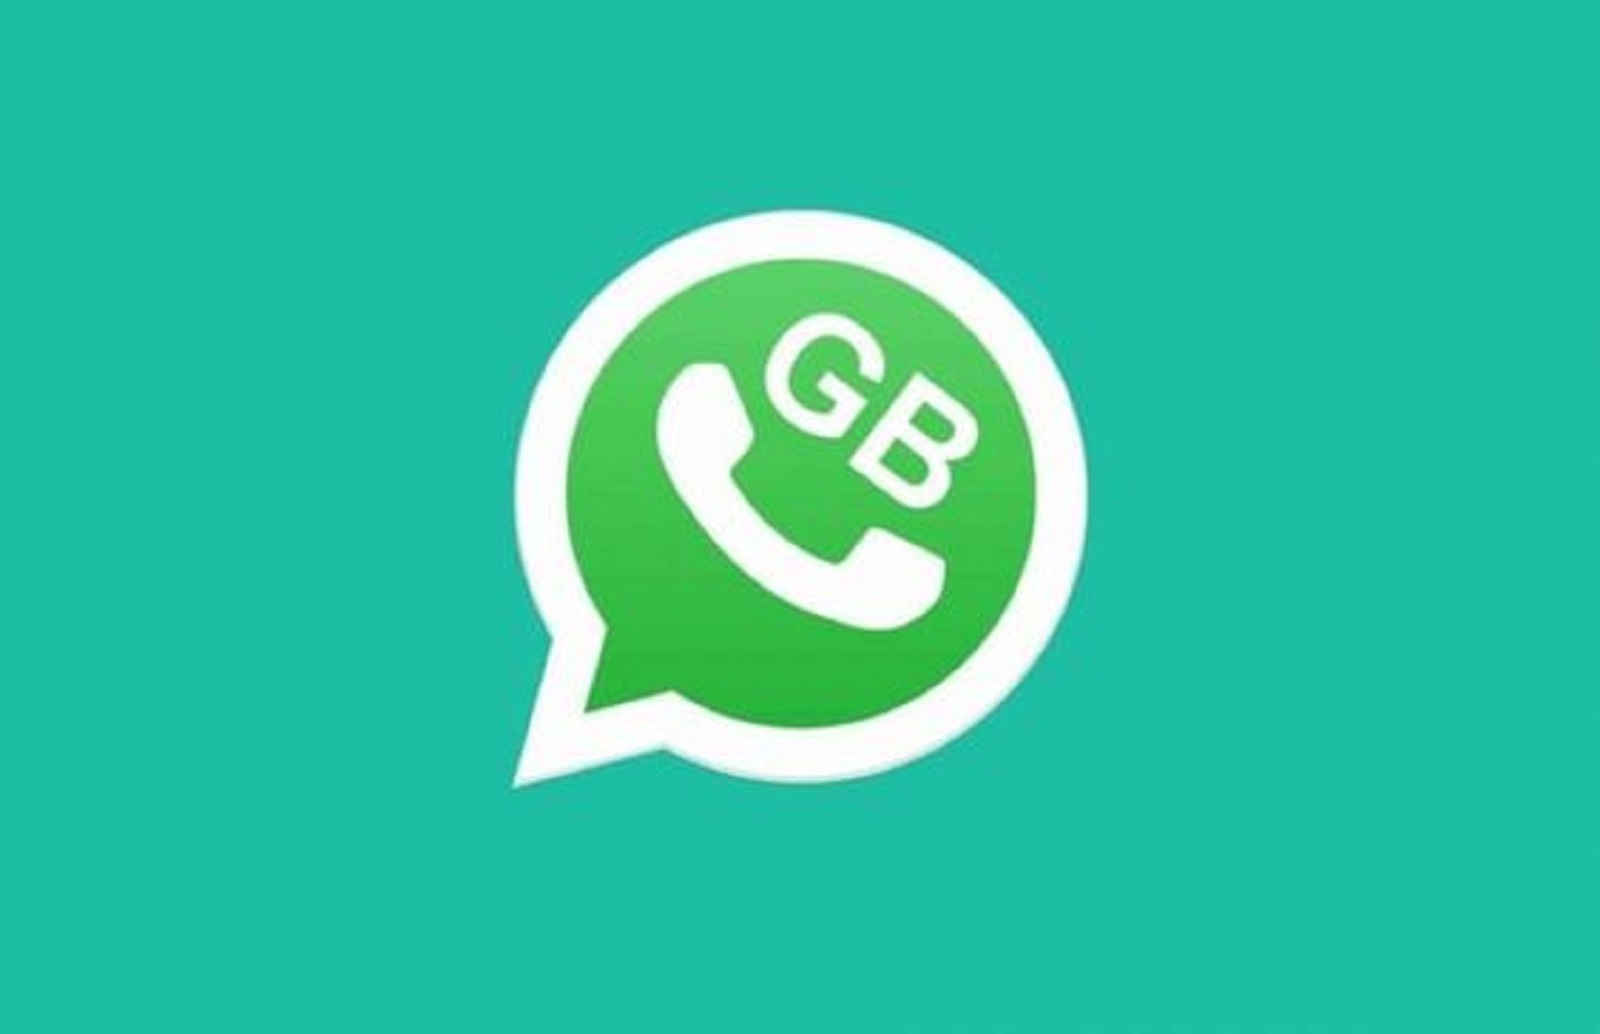 Link Download GB WhatsApp Apk v14.80, WA GB Versi Terbaru Paling Banyak Dicari!